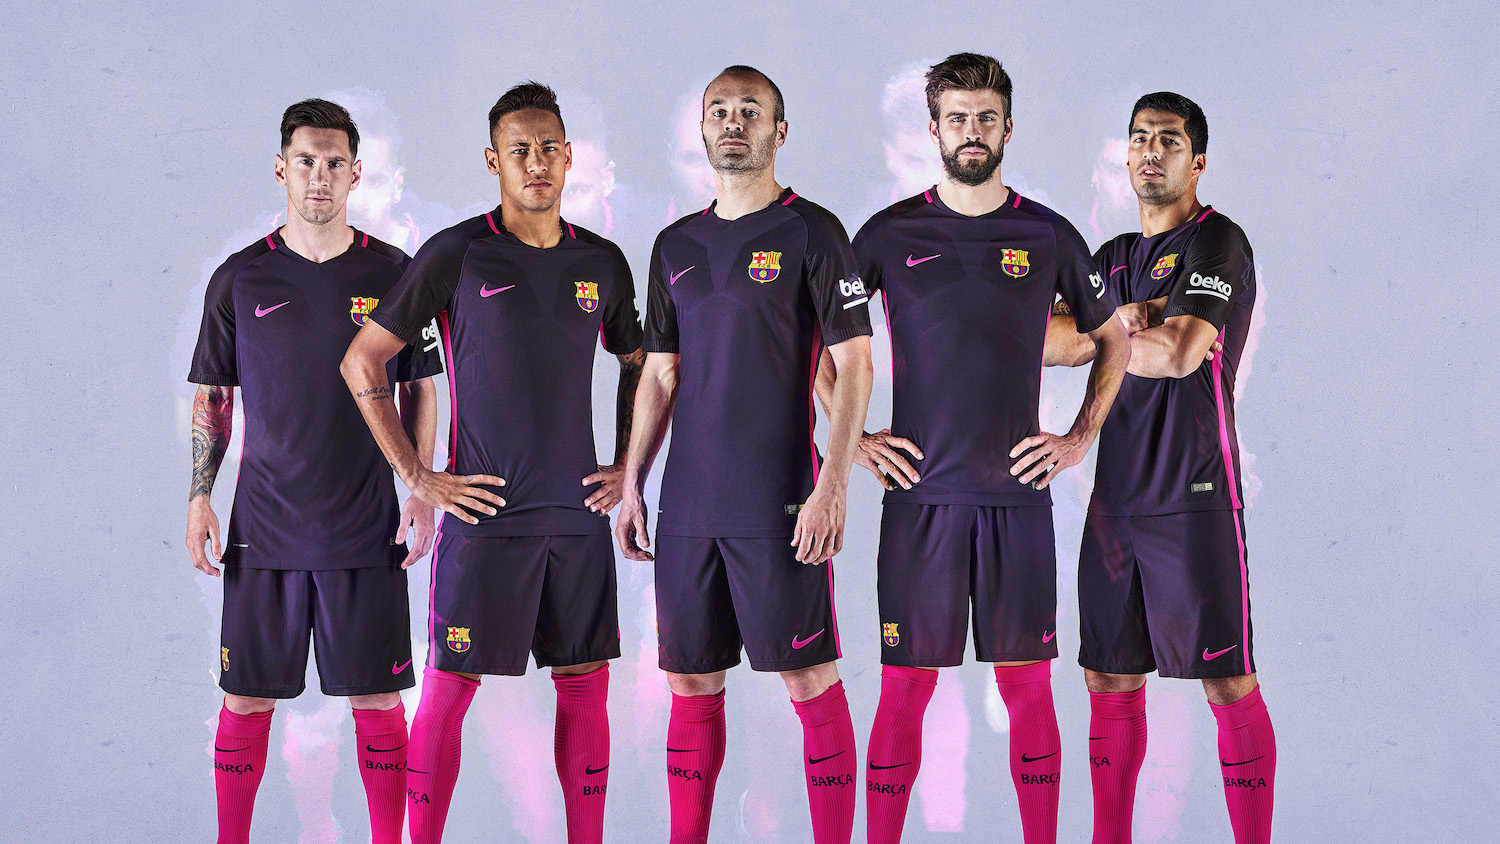 Sin alterar Hueco Ciudadano 2016/17 Nike Away Kits: Manchester City, PSG & Barcelona — Soccer City  Sports Center